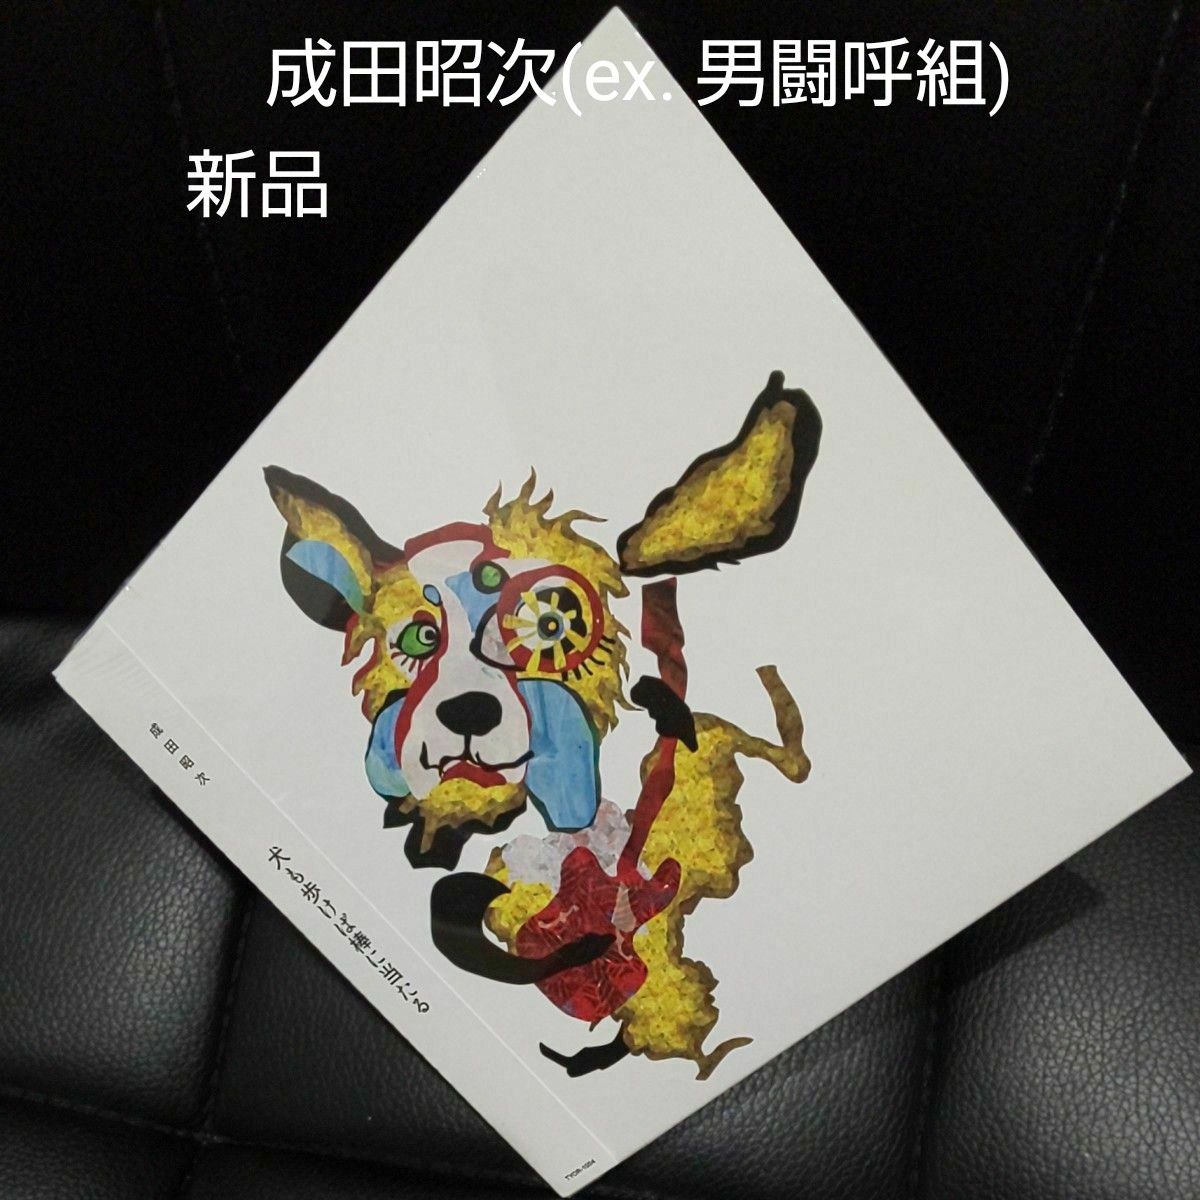 犬も歩けば棒に当たる成田昭次(ex. 男闘呼組)による13年ぶりとなるオリジナル作品パズル収録